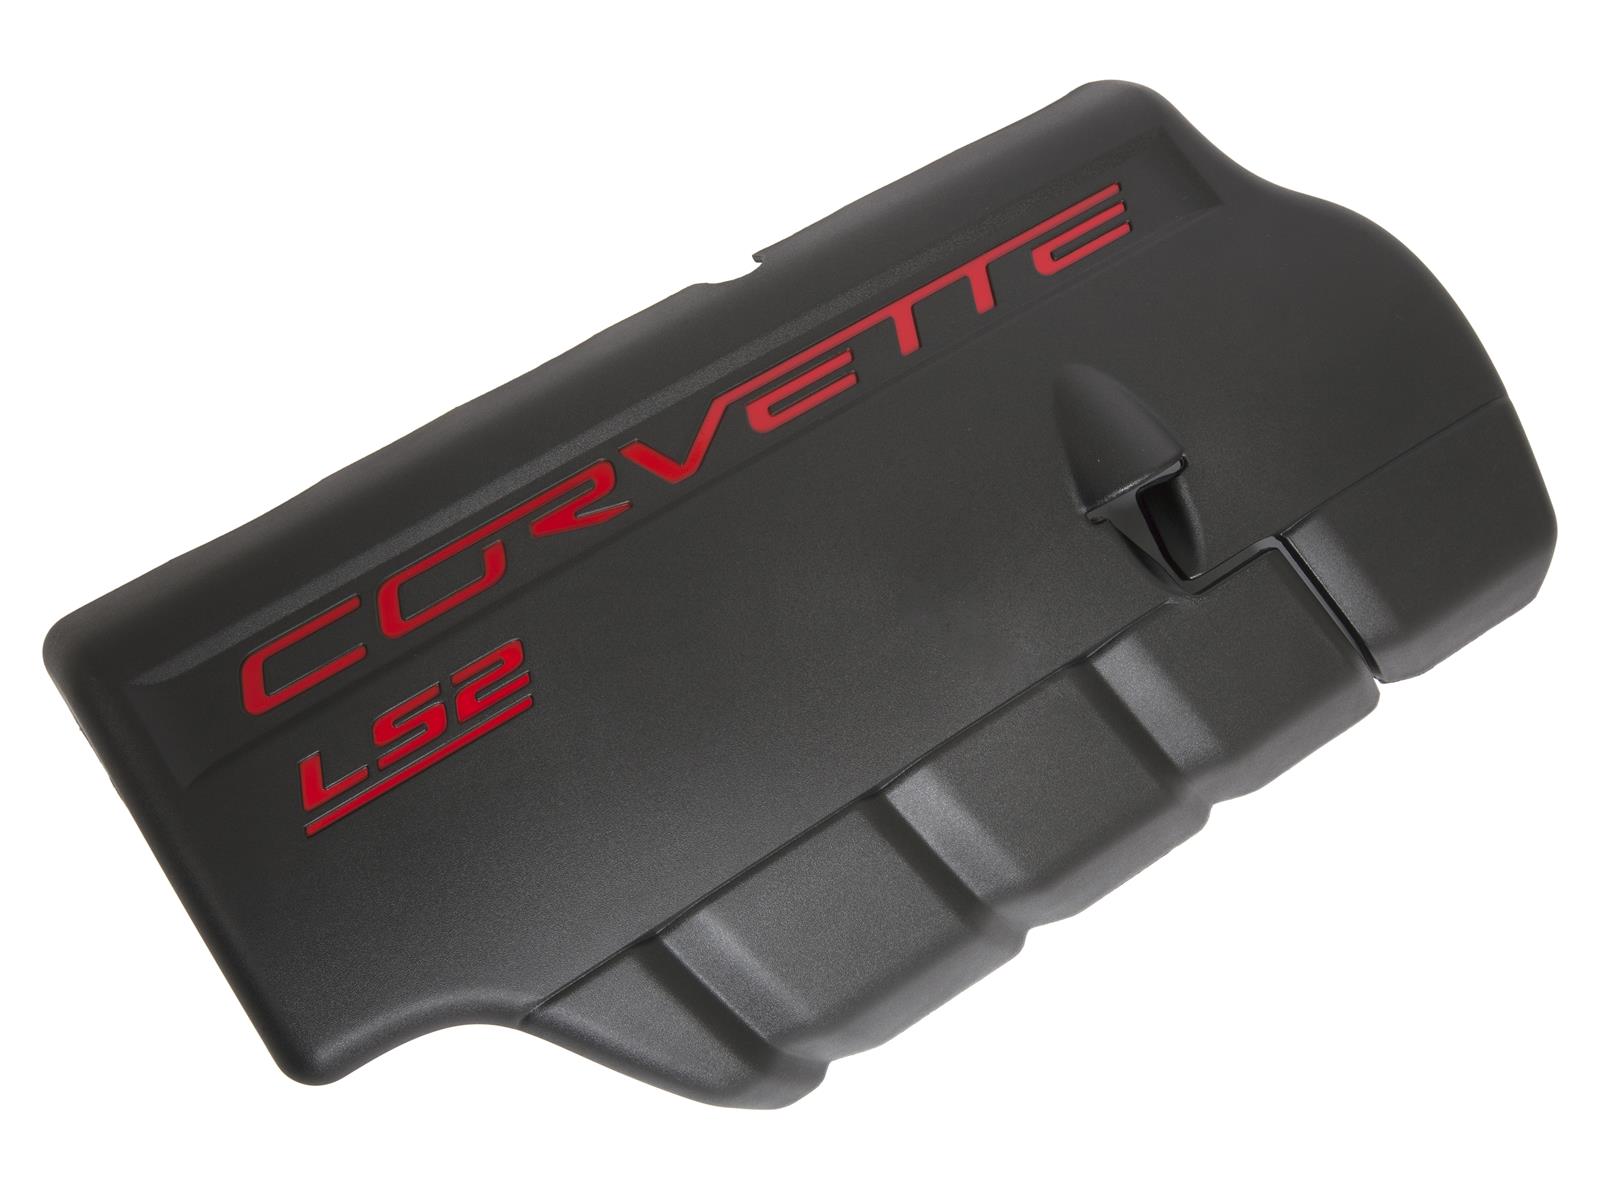 2005-2007 Corvette C6 LS2 FACTORY FUEL RAIL COVER LEFT SIDE IS BLACK WITH RED CORVETTE SCRIPT.